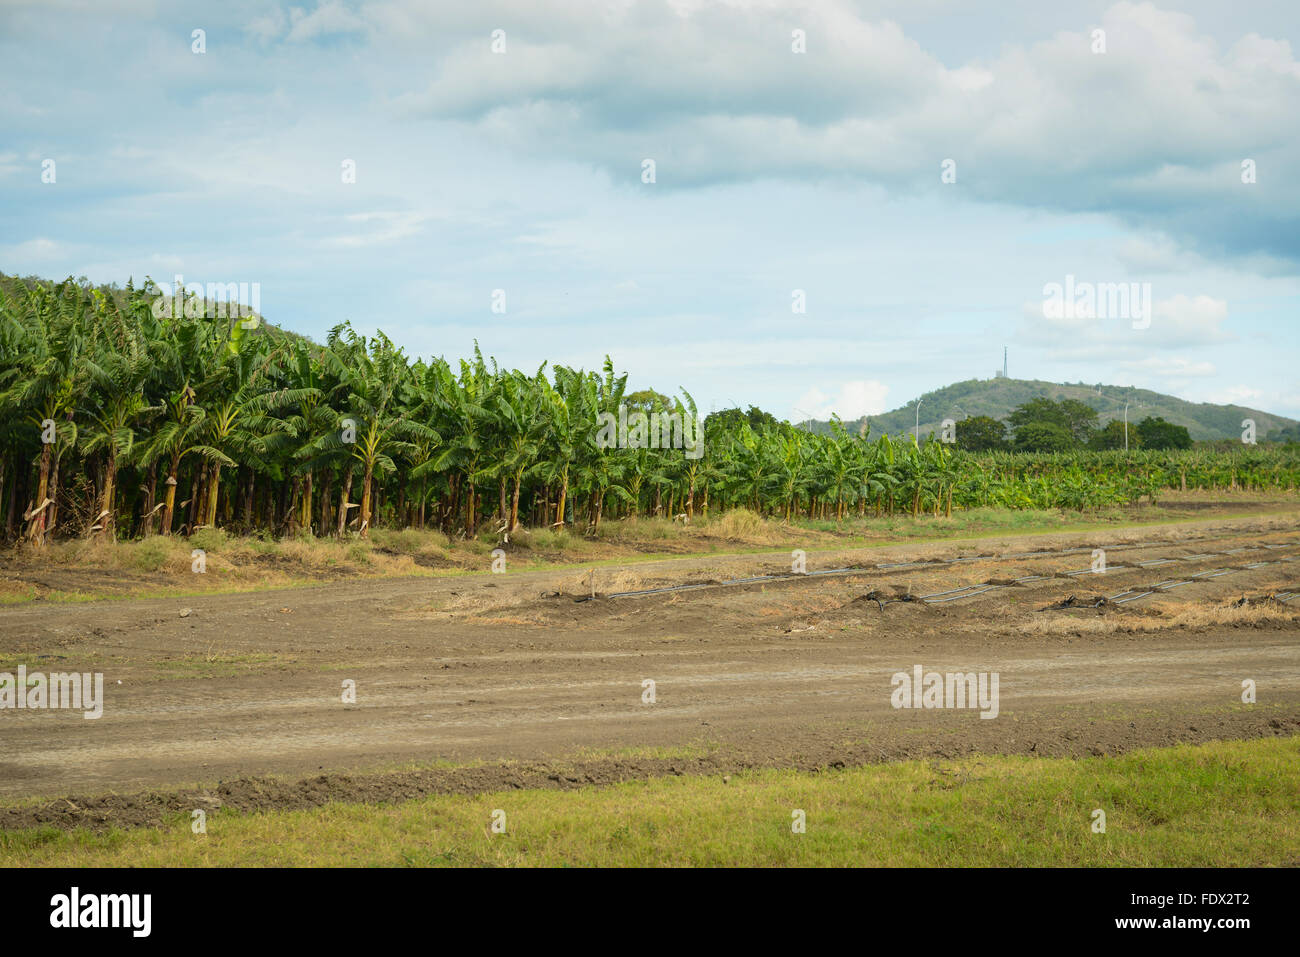 Piantagioni di banane sono una delle tante attività agricole nell'isola. PUERTO RICO - isola dei Caraibi. Territorio statunitense. Foto Stock